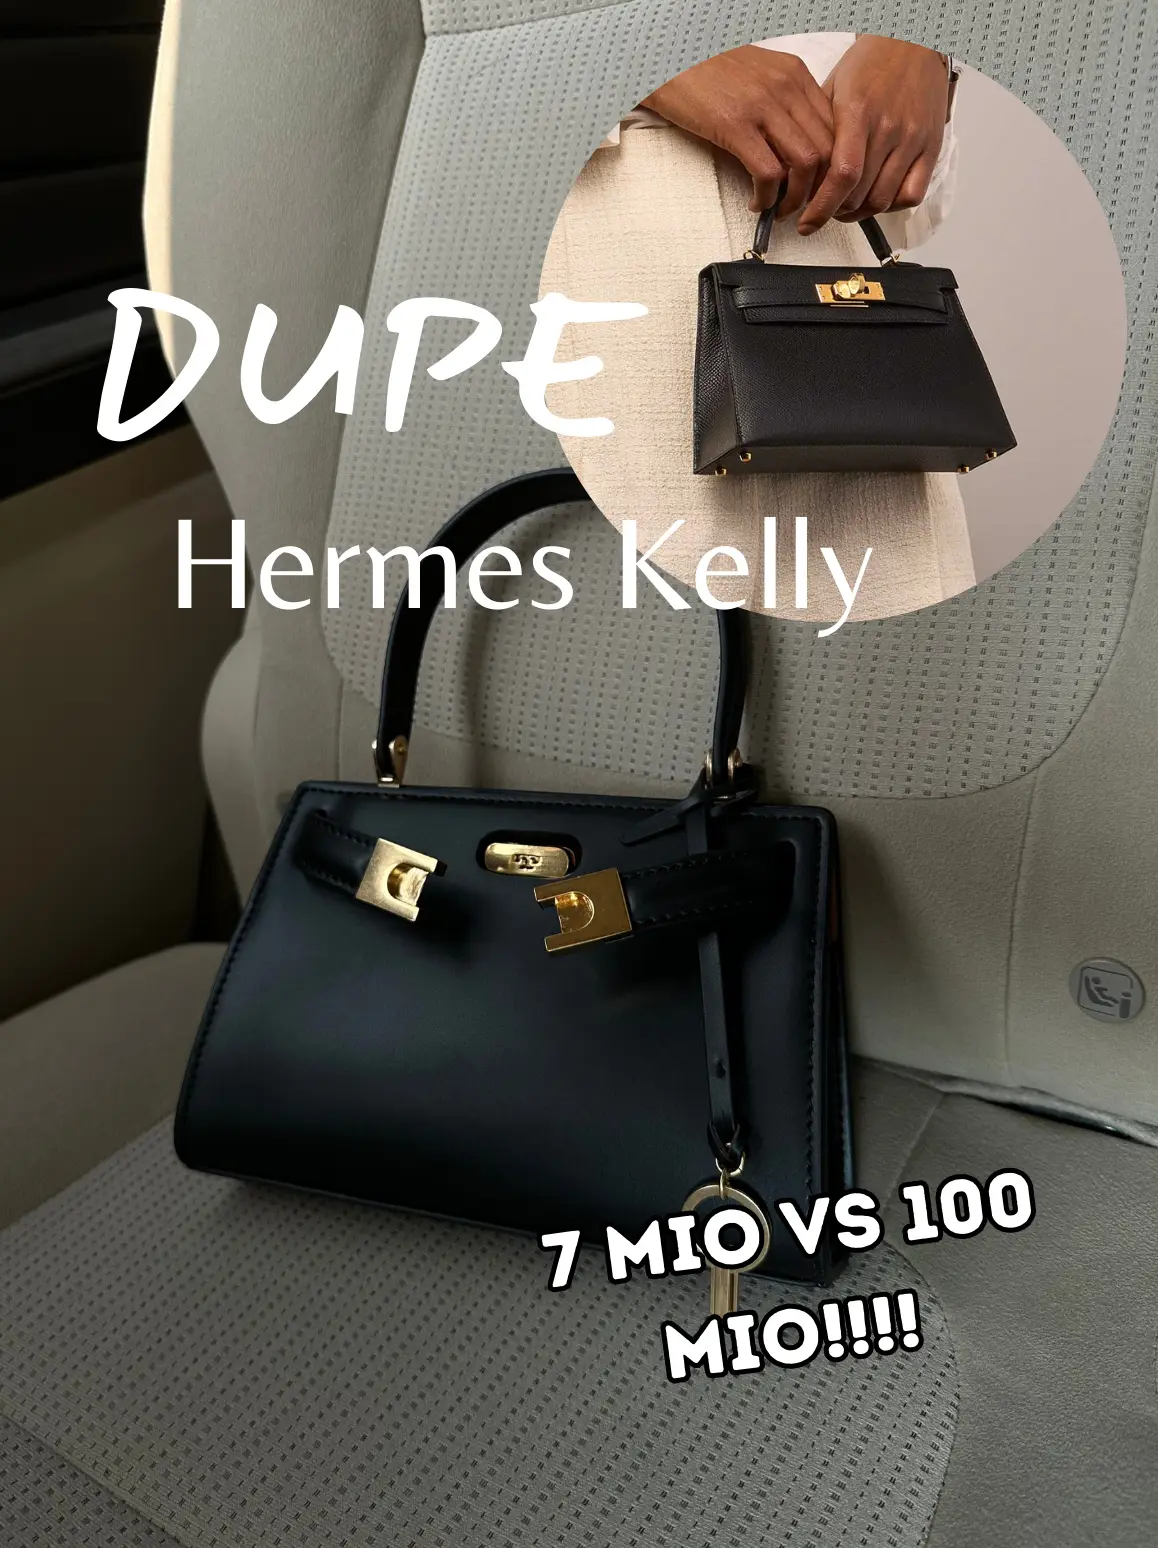 160 Hermes Kelly ideas  hermes kelly, hermes, kelly bag